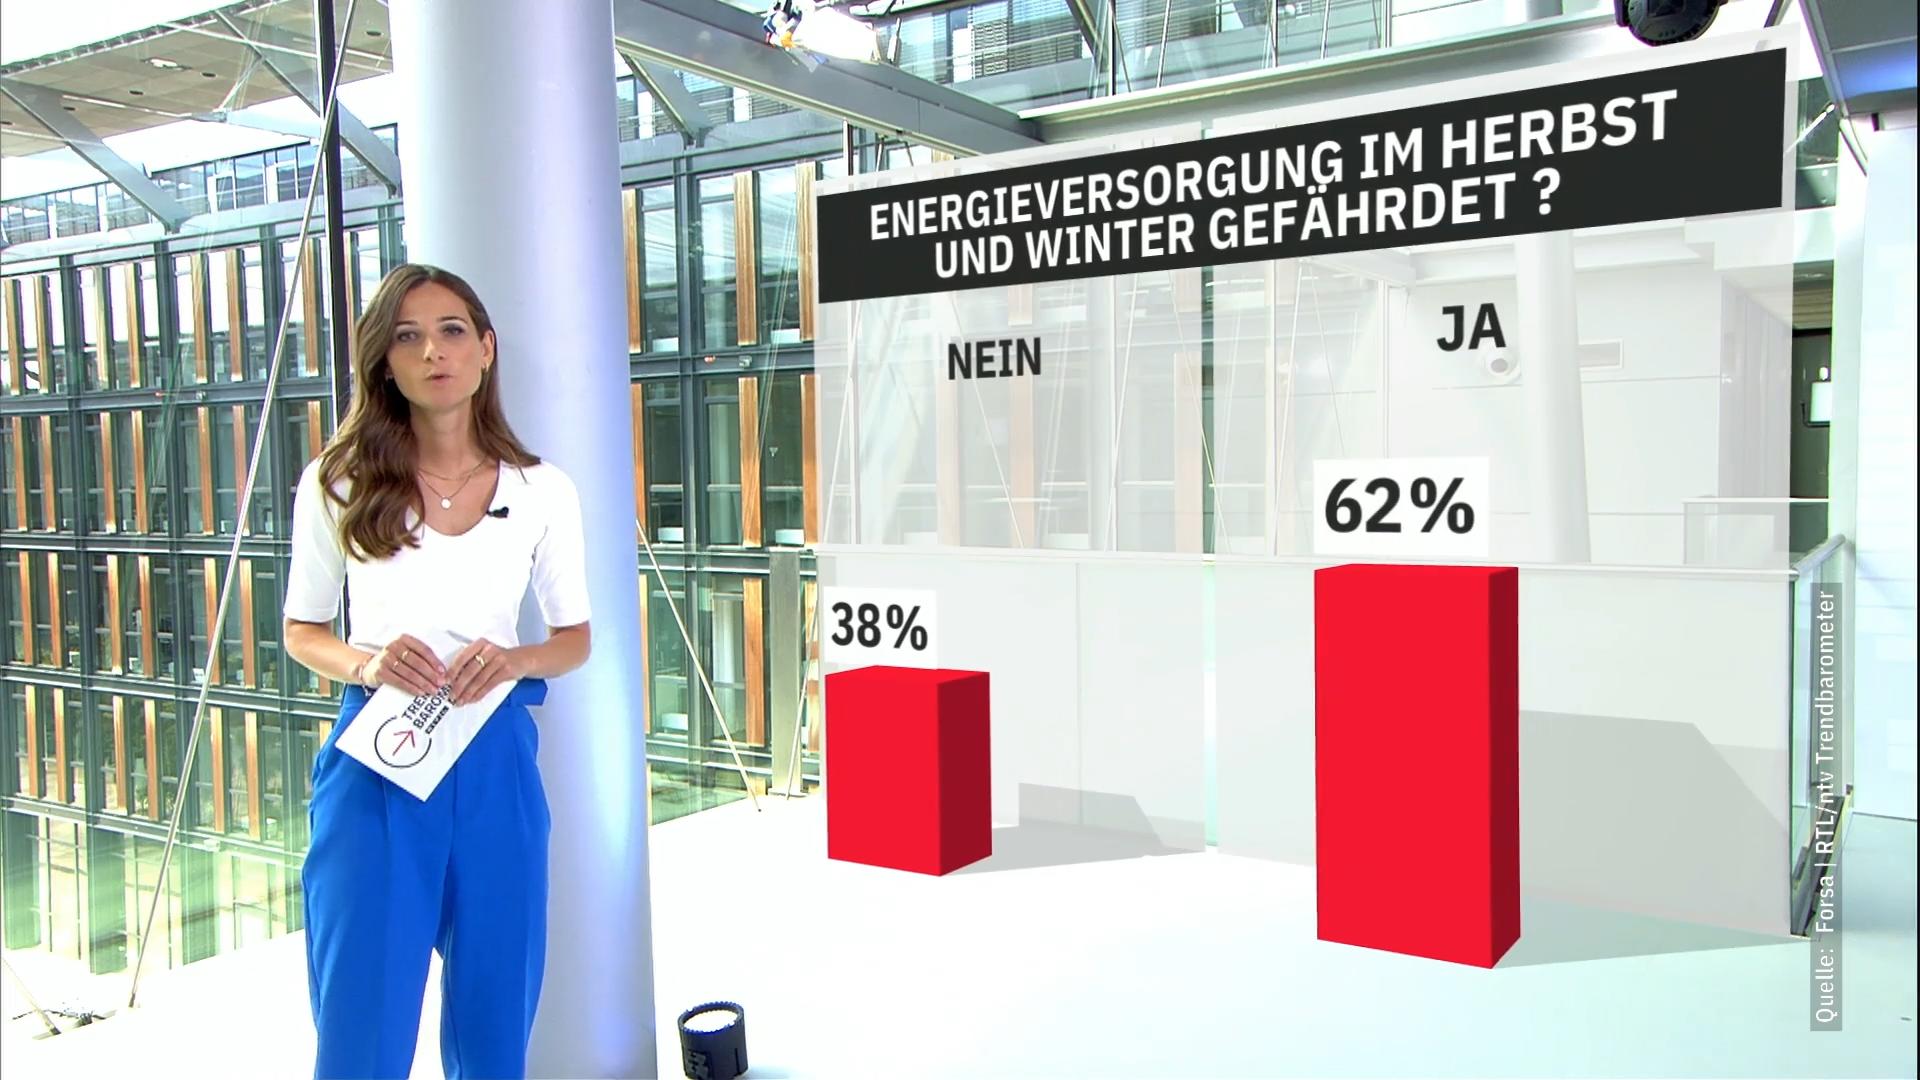 62 Prozent fürchten sich vor dem Herbst RTL/ntv-Trendbarometer zu Energieversorgung